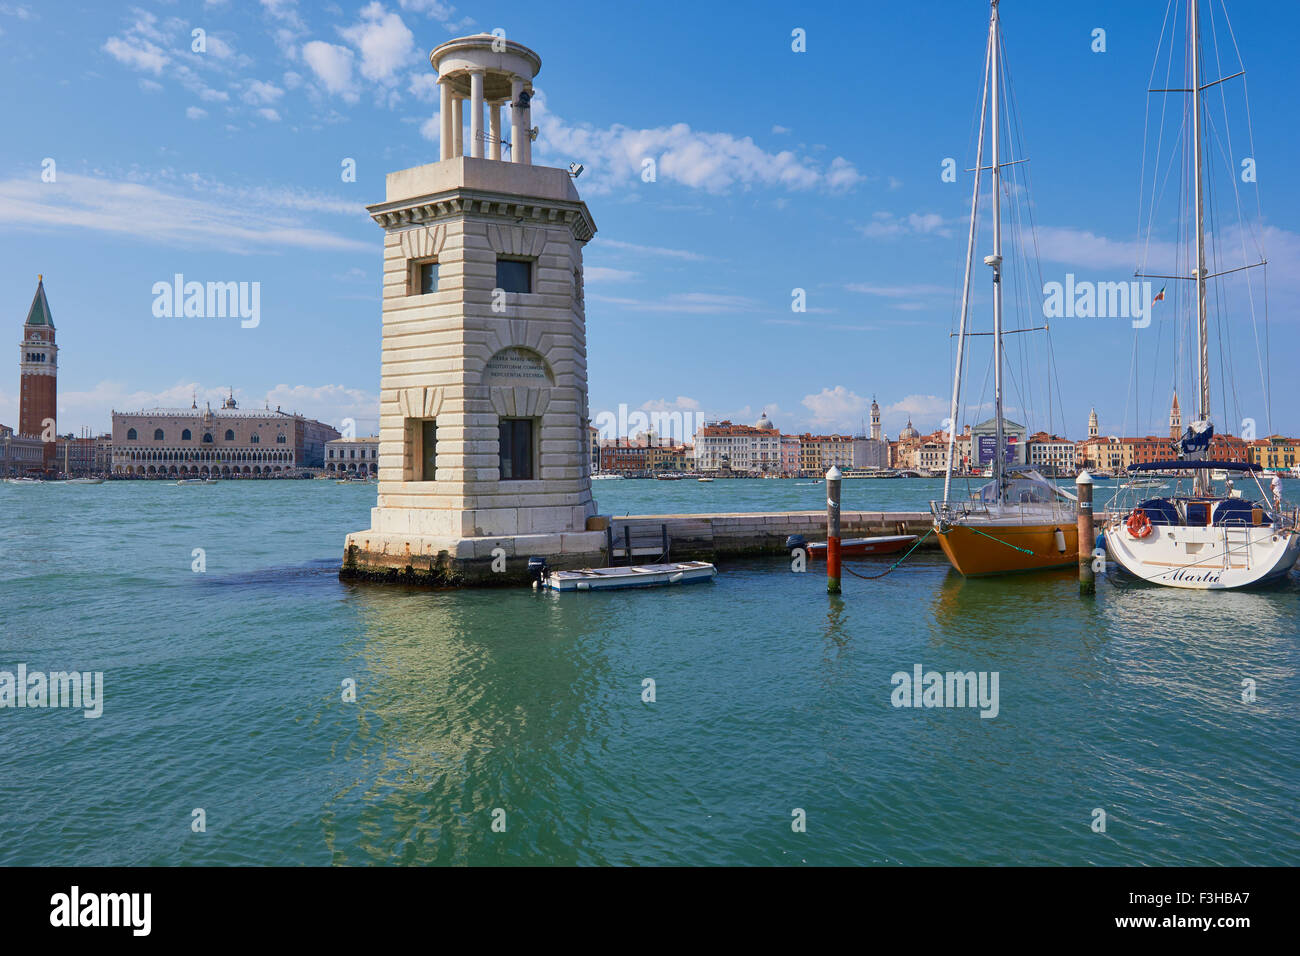 Venise y compris la tour de St Marks de l'île de San Giorgio Maggiore Veneto Italie Europe Banque D'Images